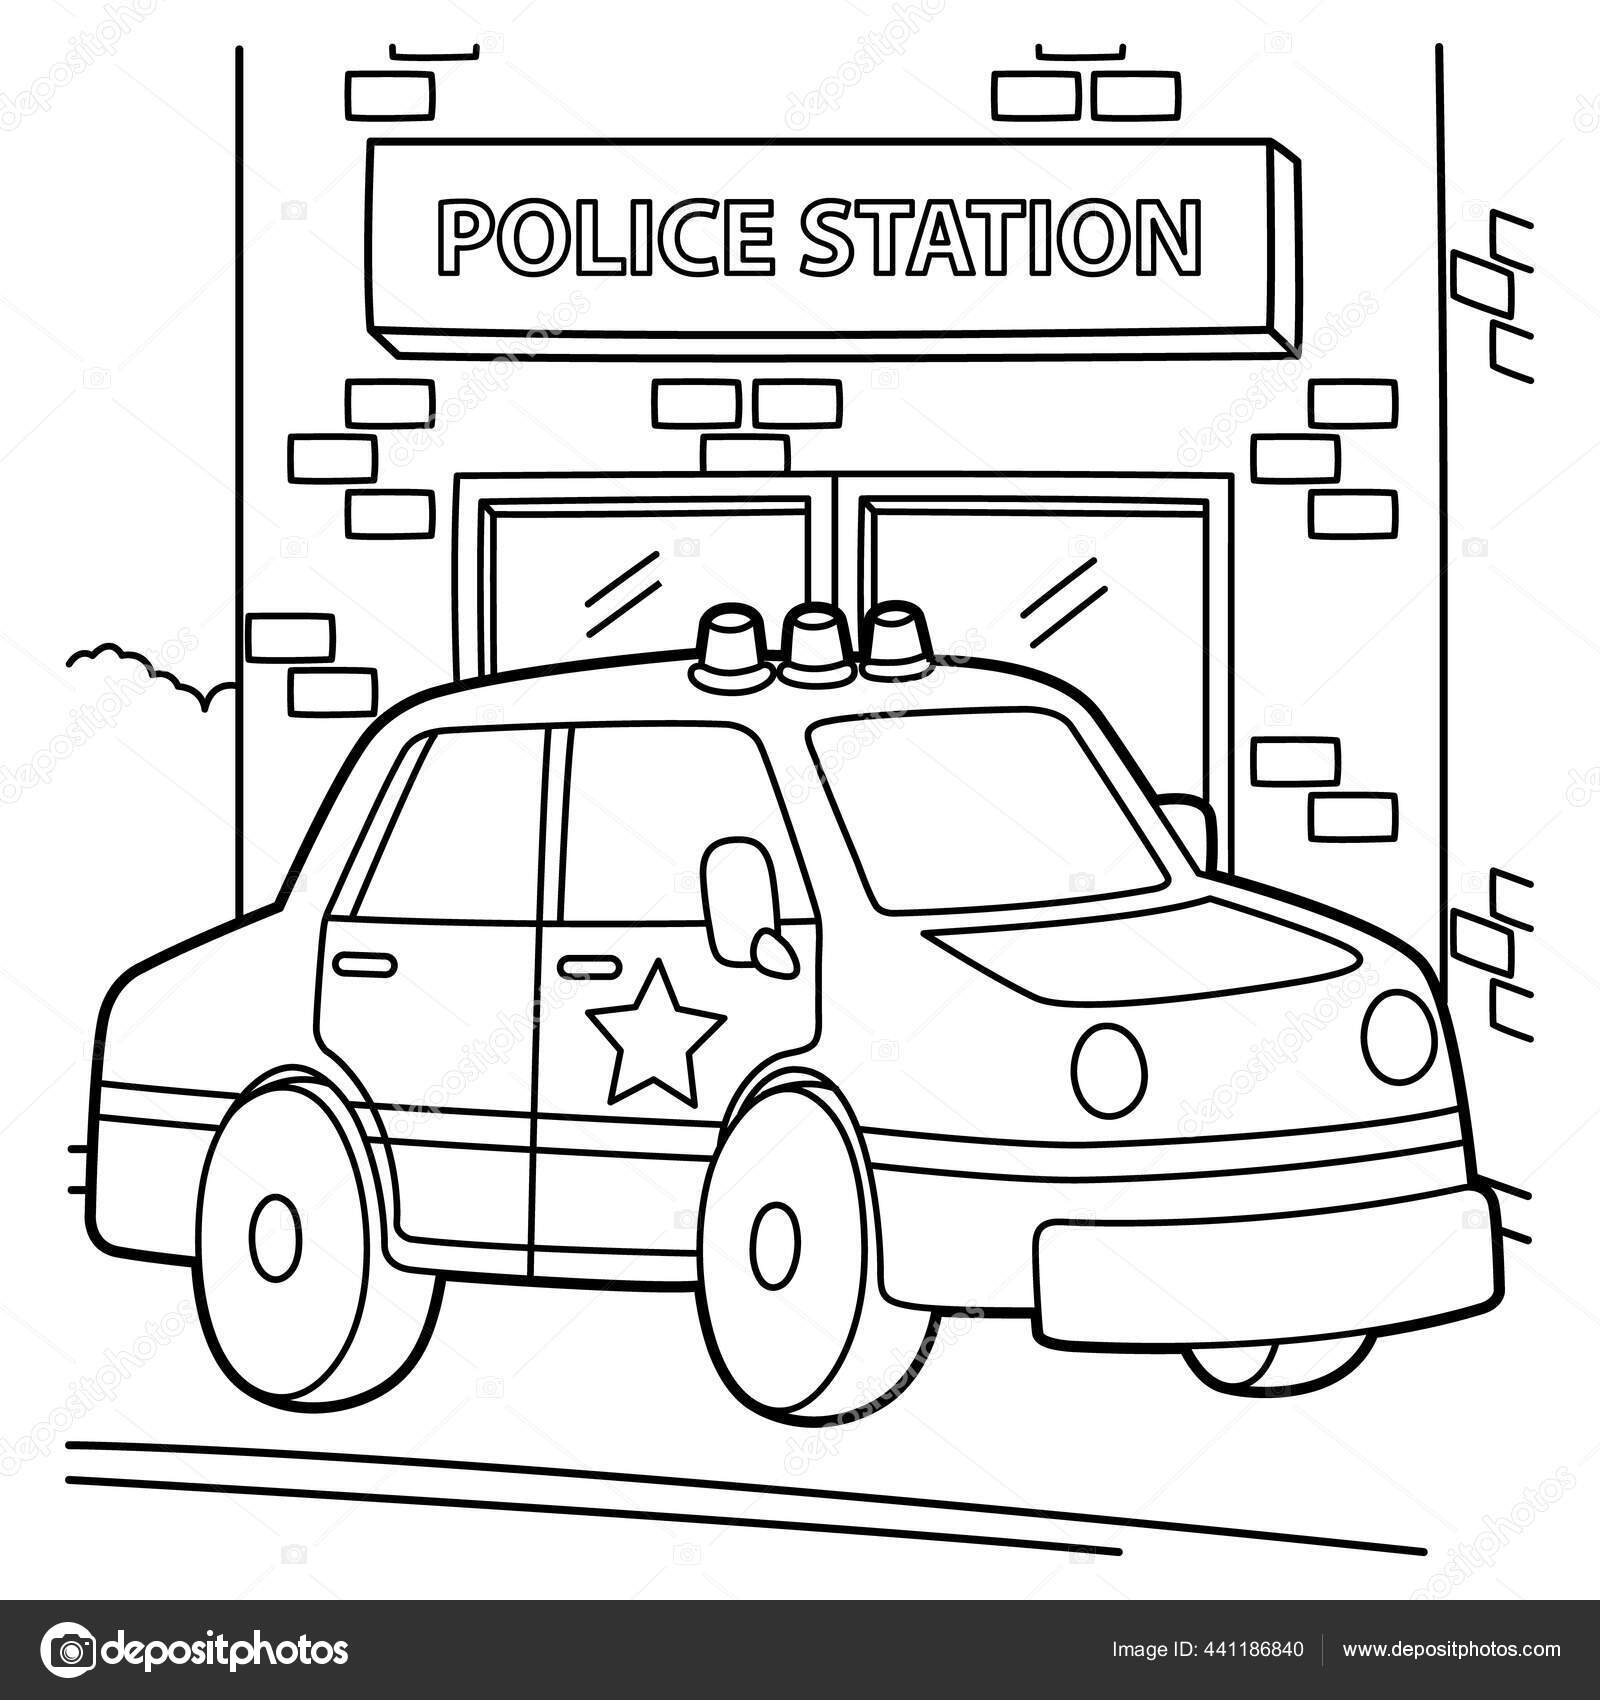 Desenho de Carro de polícia para Colorir - Colorir.com